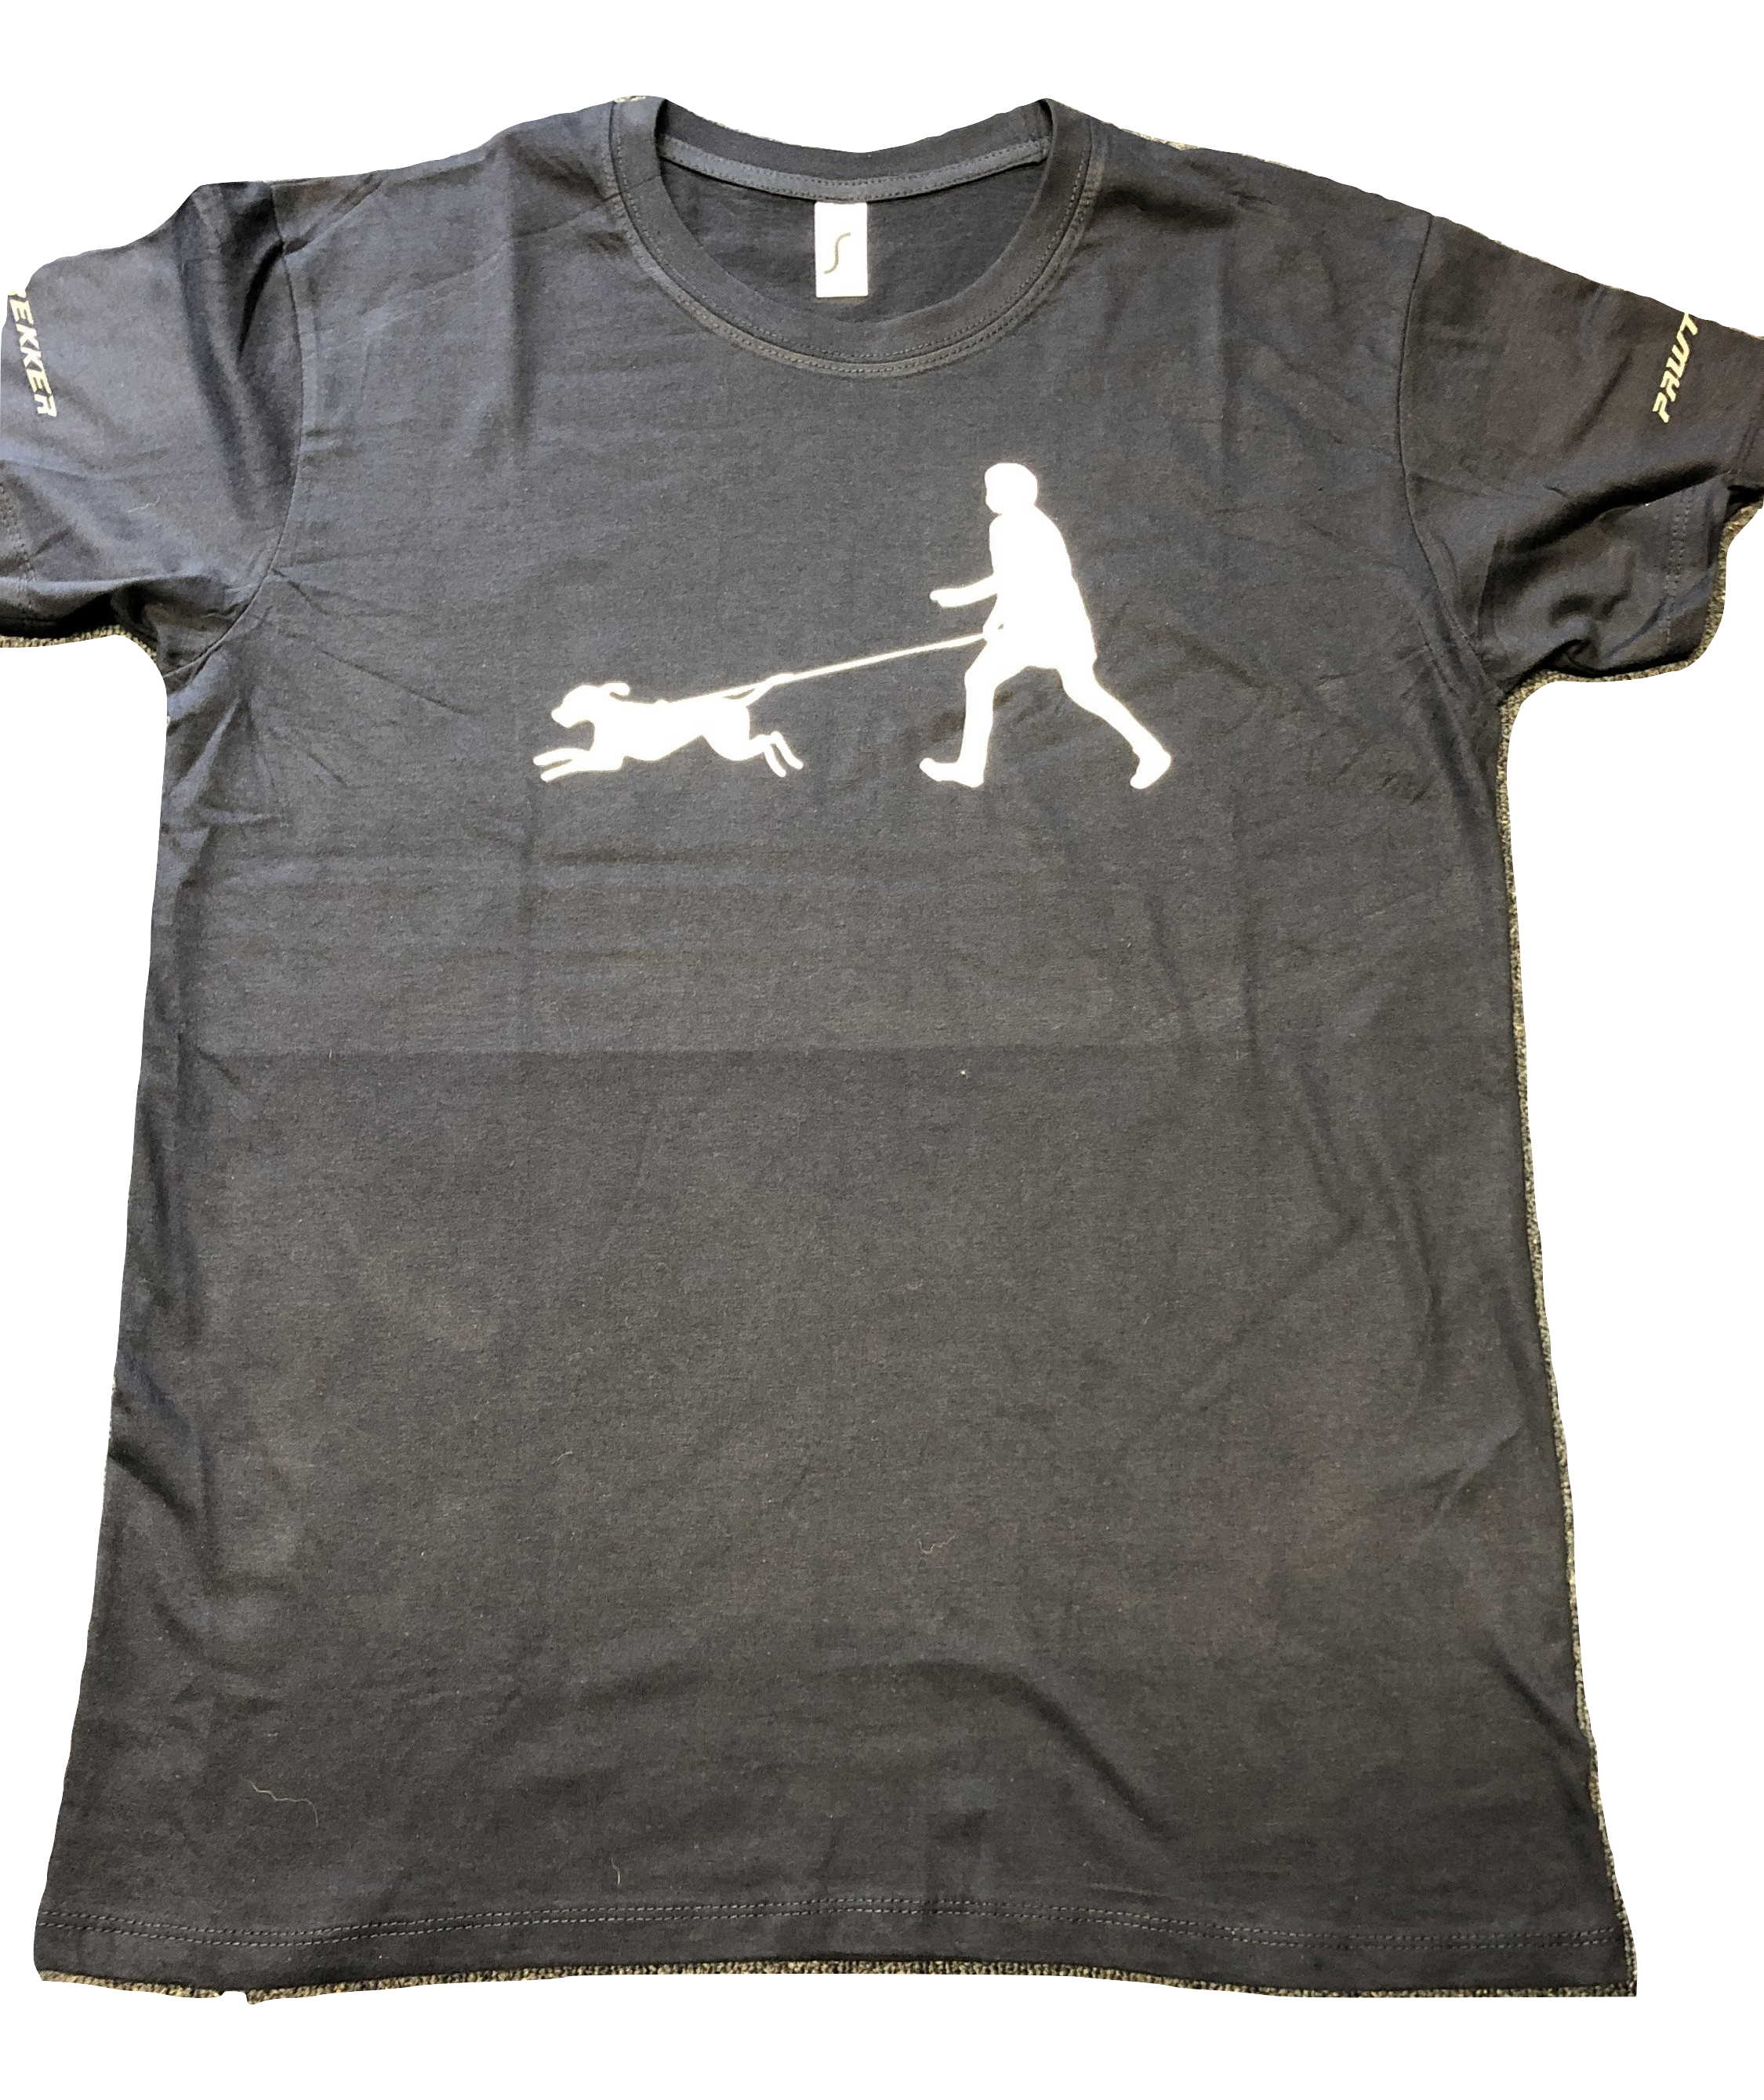 Dog Sports T-Shirt (Pawtrekker)